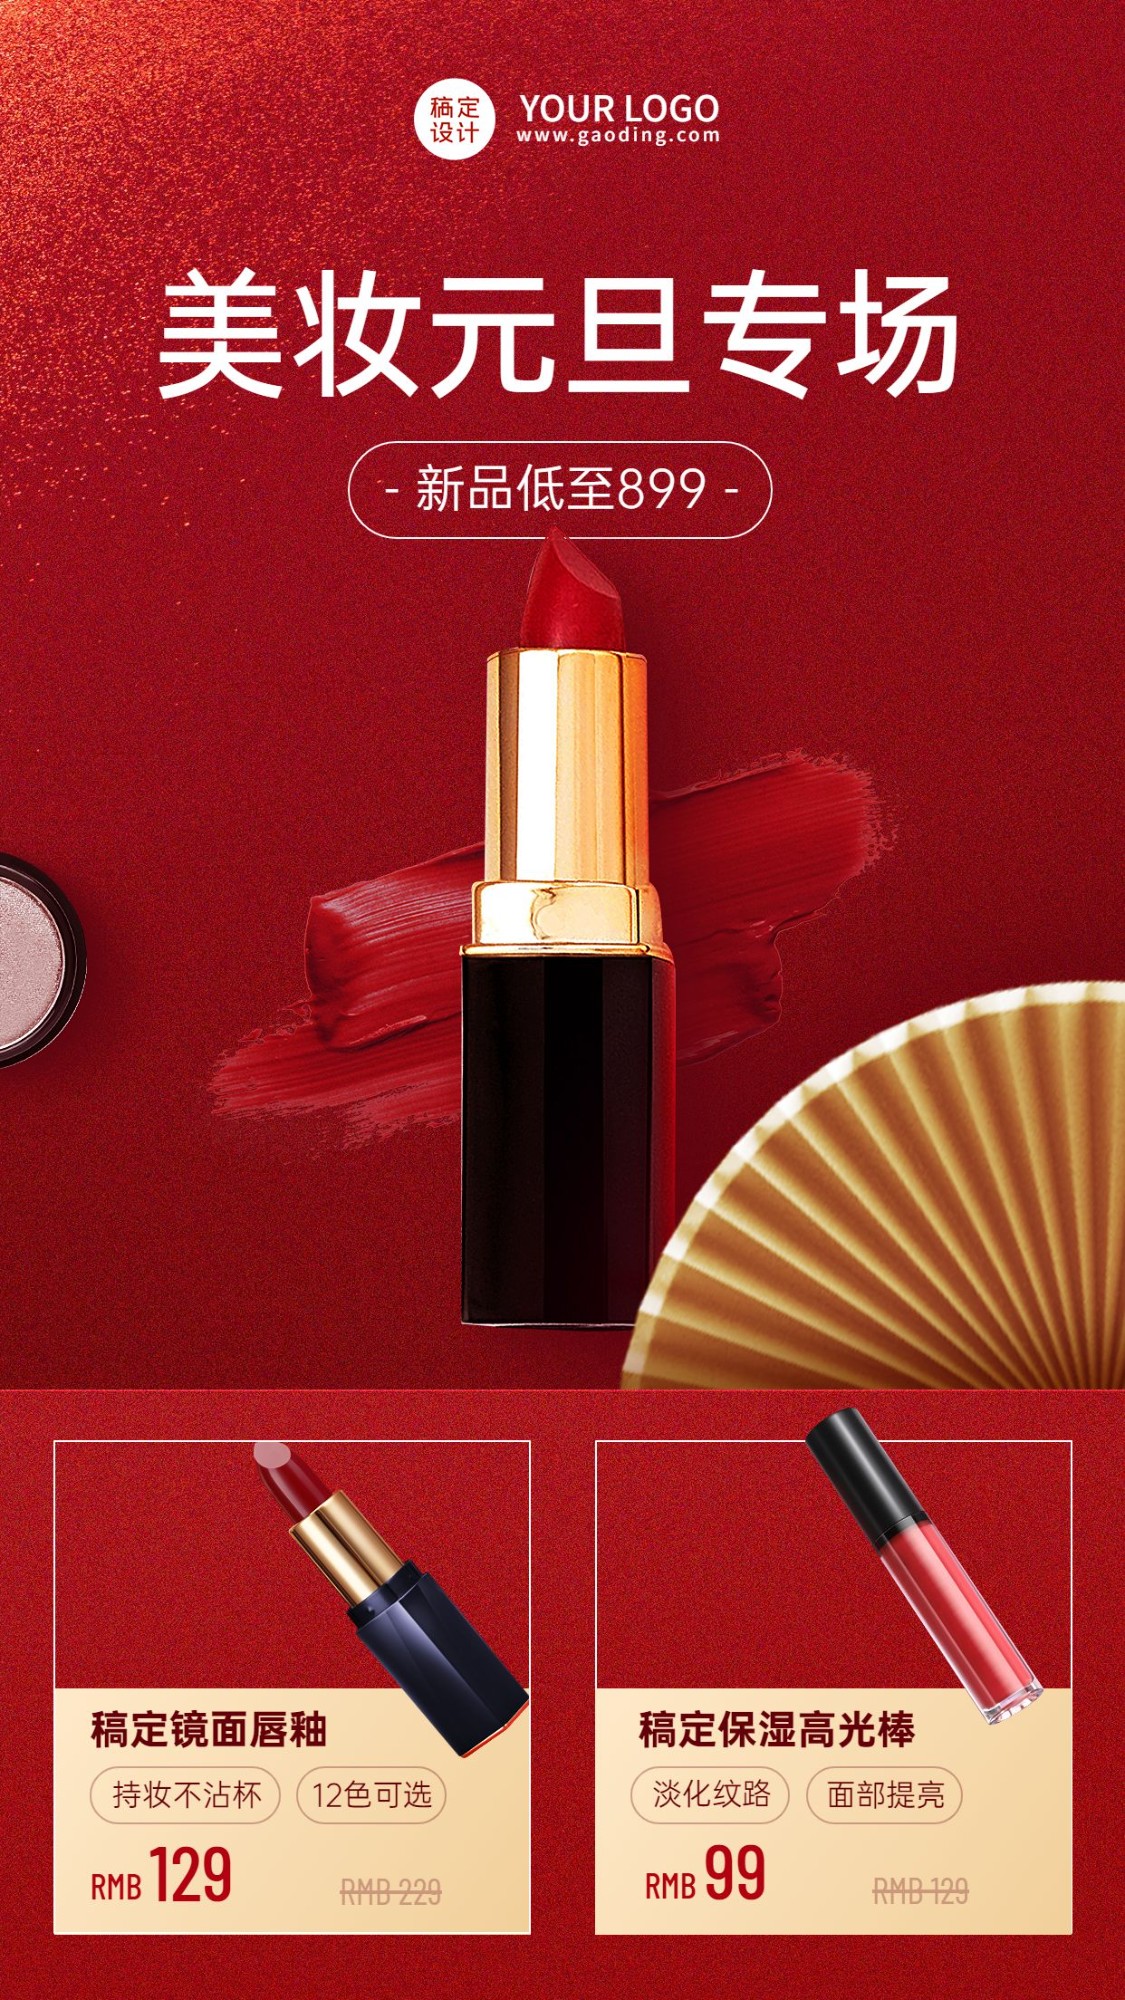 元旦美容美妆产品展示营销奢华中国风手机海报预览效果